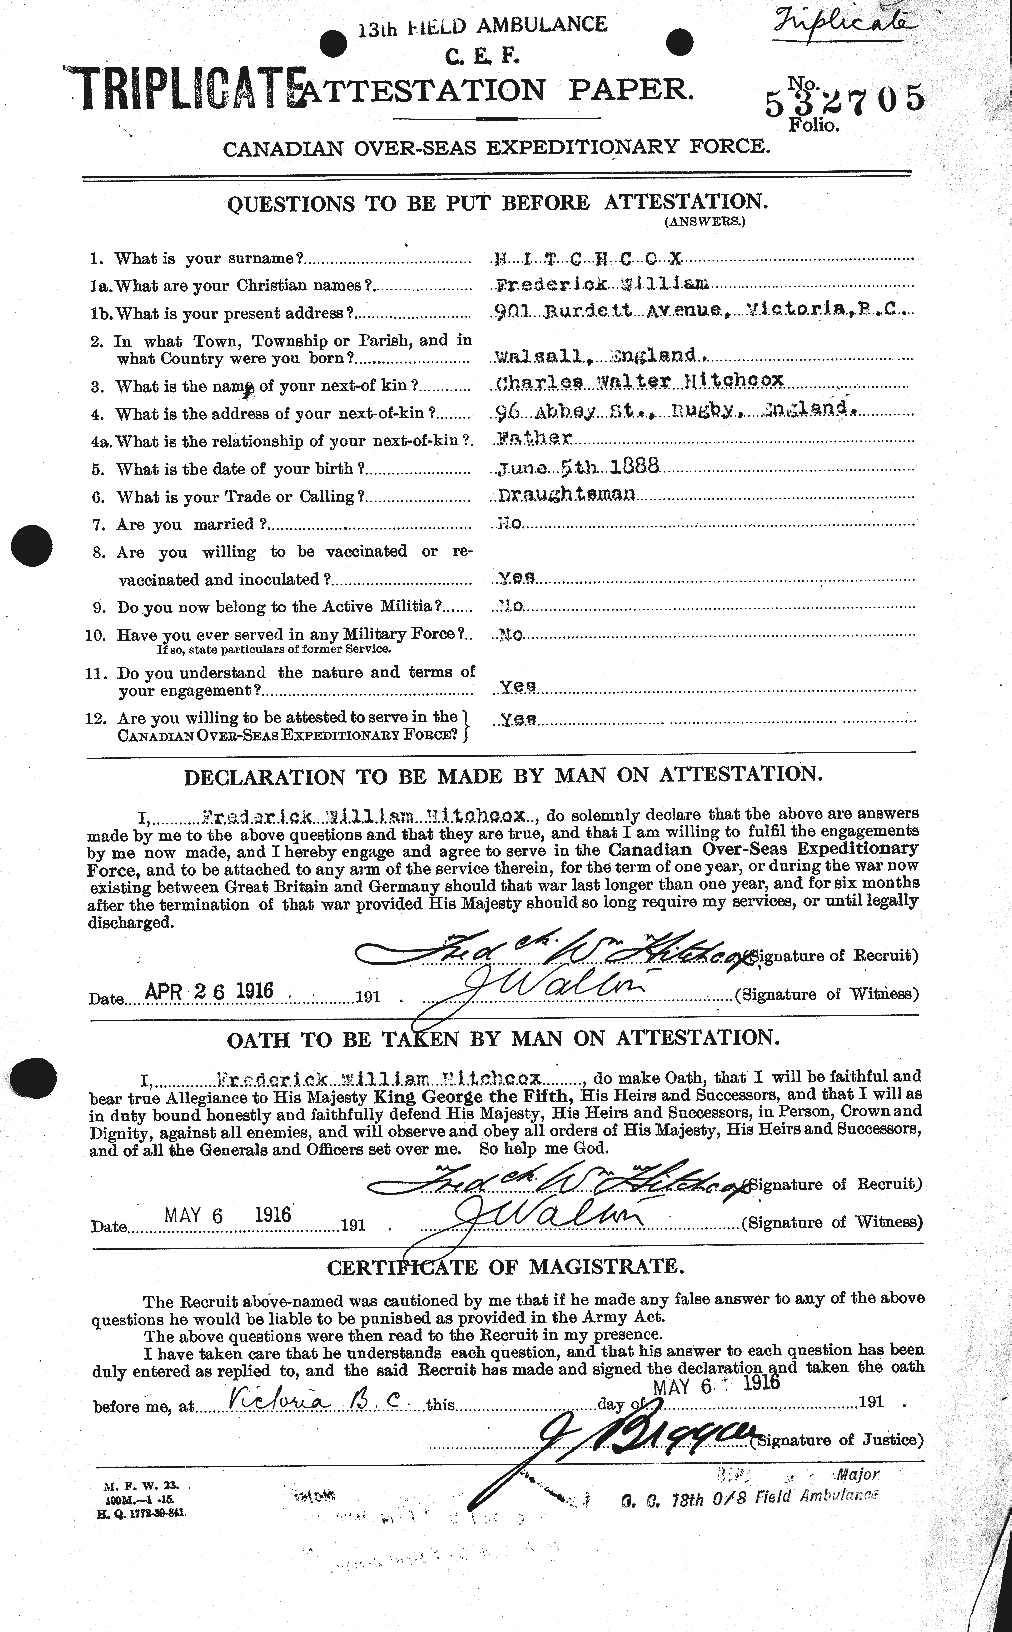 Dossiers du Personnel de la Première Guerre mondiale - CEC 393045a